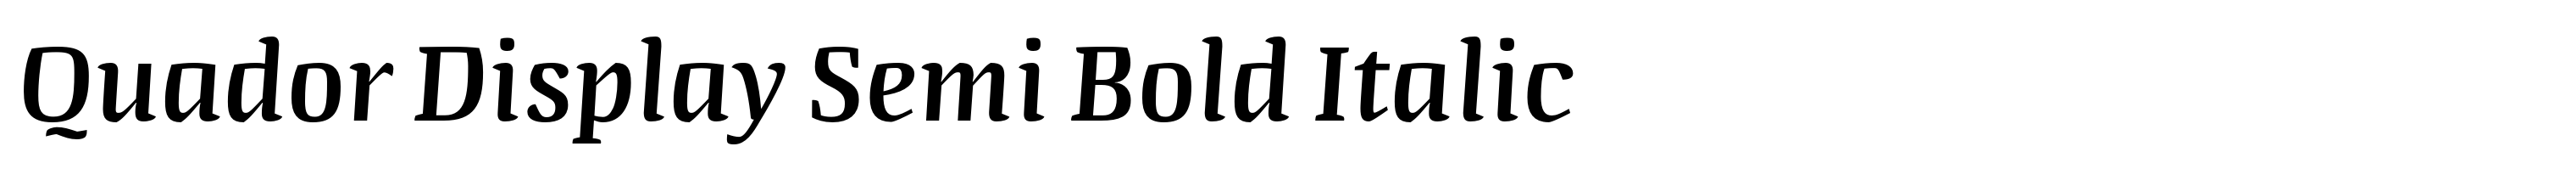 Quador Display Semi Bold Italic